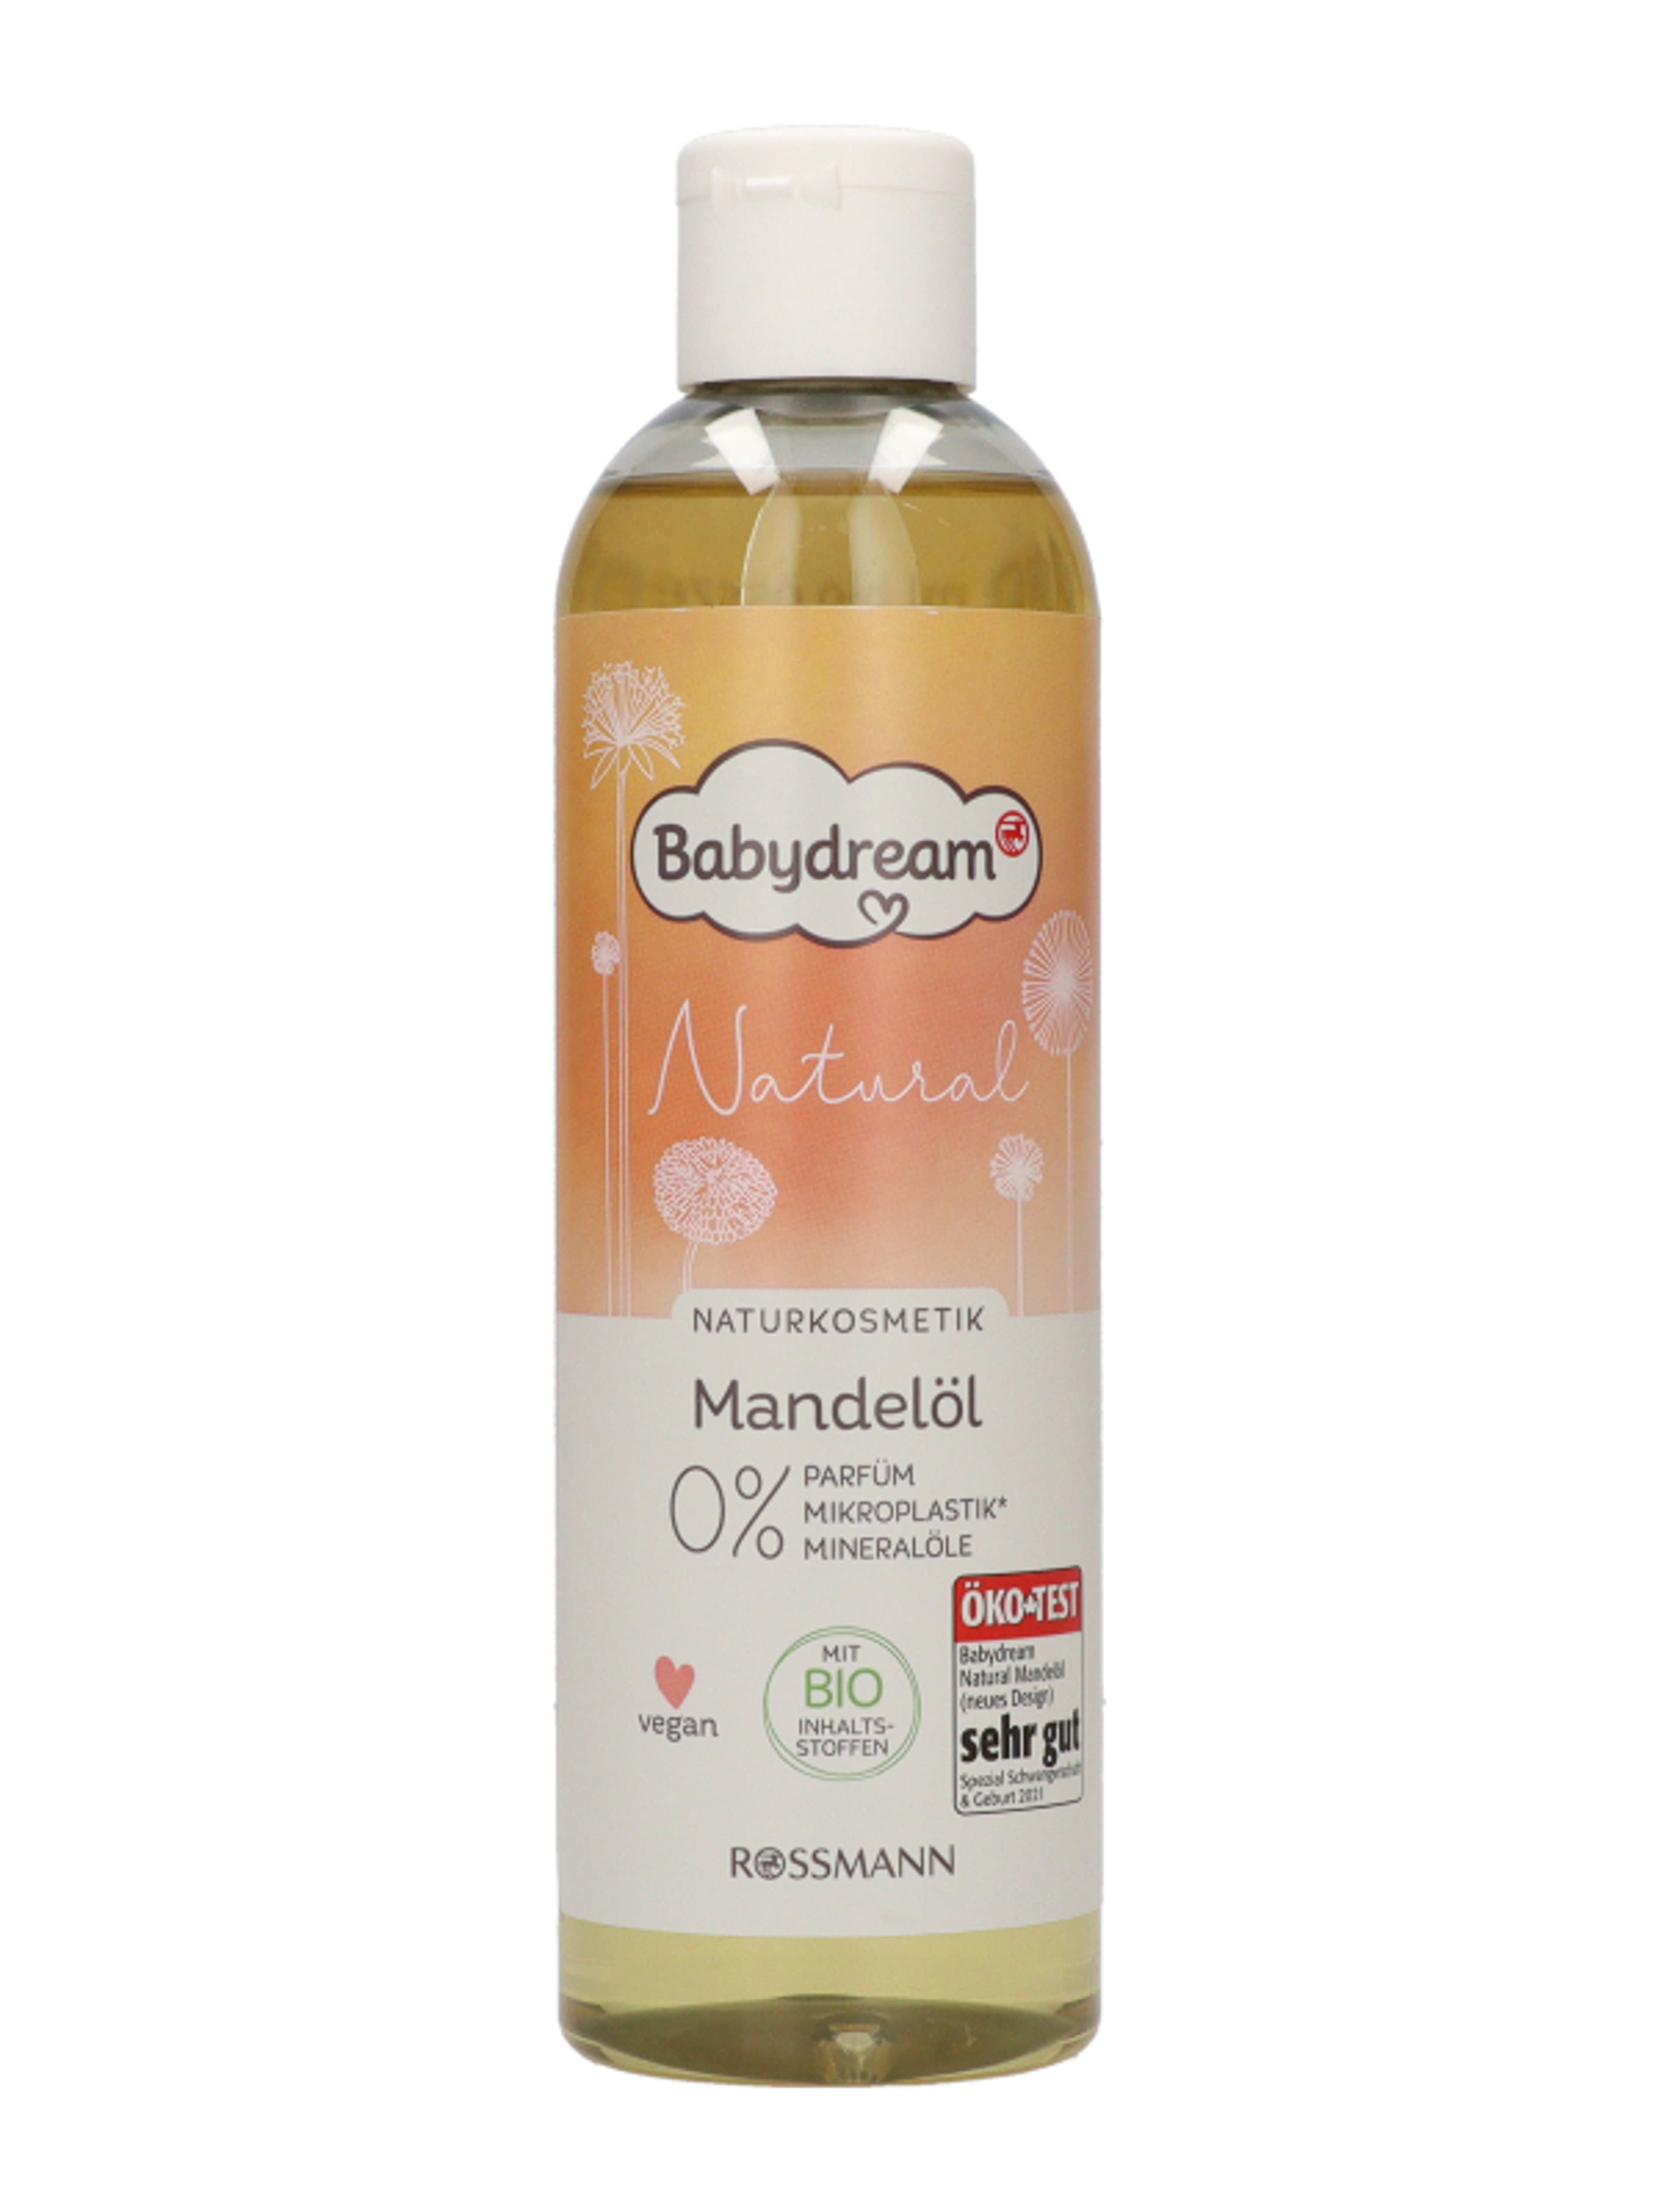 Babydream Natural mandulaolaj - 250 ml